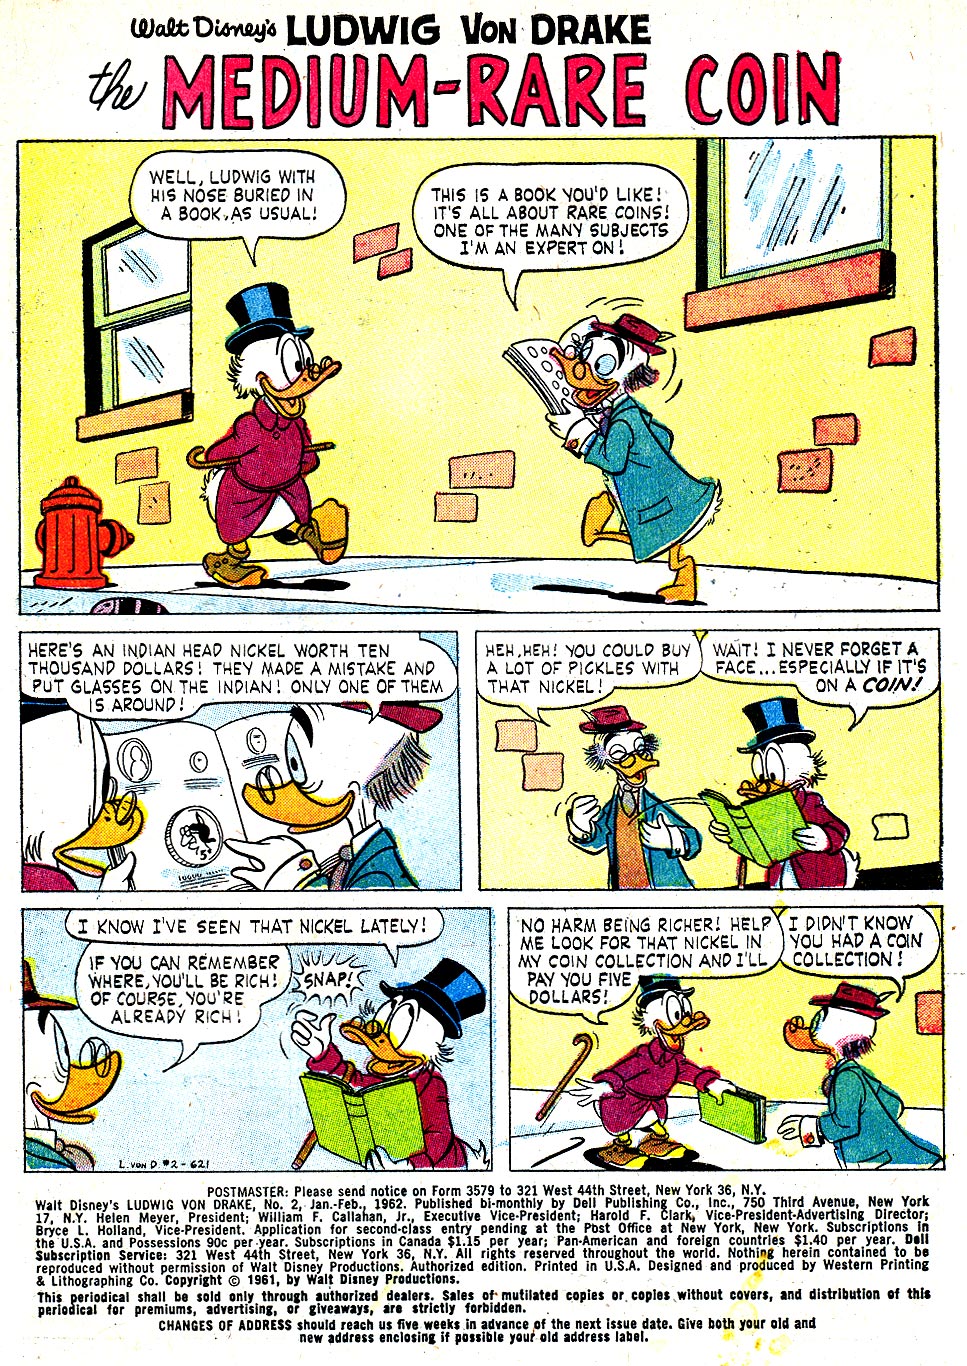 Read online Walt Disney's Ludwig Von Drake comic -  Issue #2 - 3